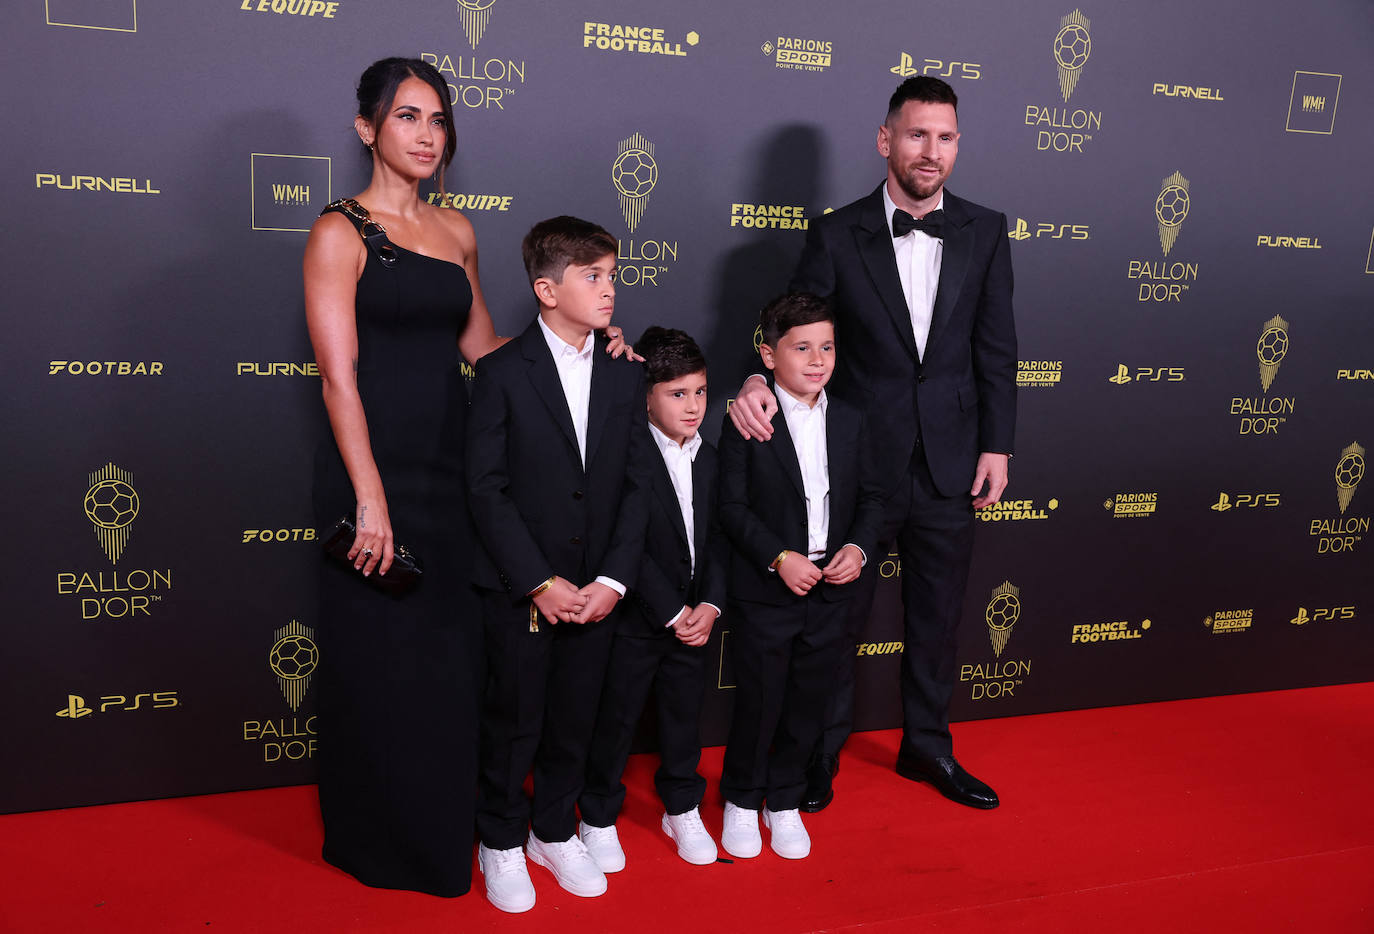 Leo Messi, atacante del Inter Miami y de la selección argentina, posa en la alfombra roja acompañado de su mujer y sus hijos.